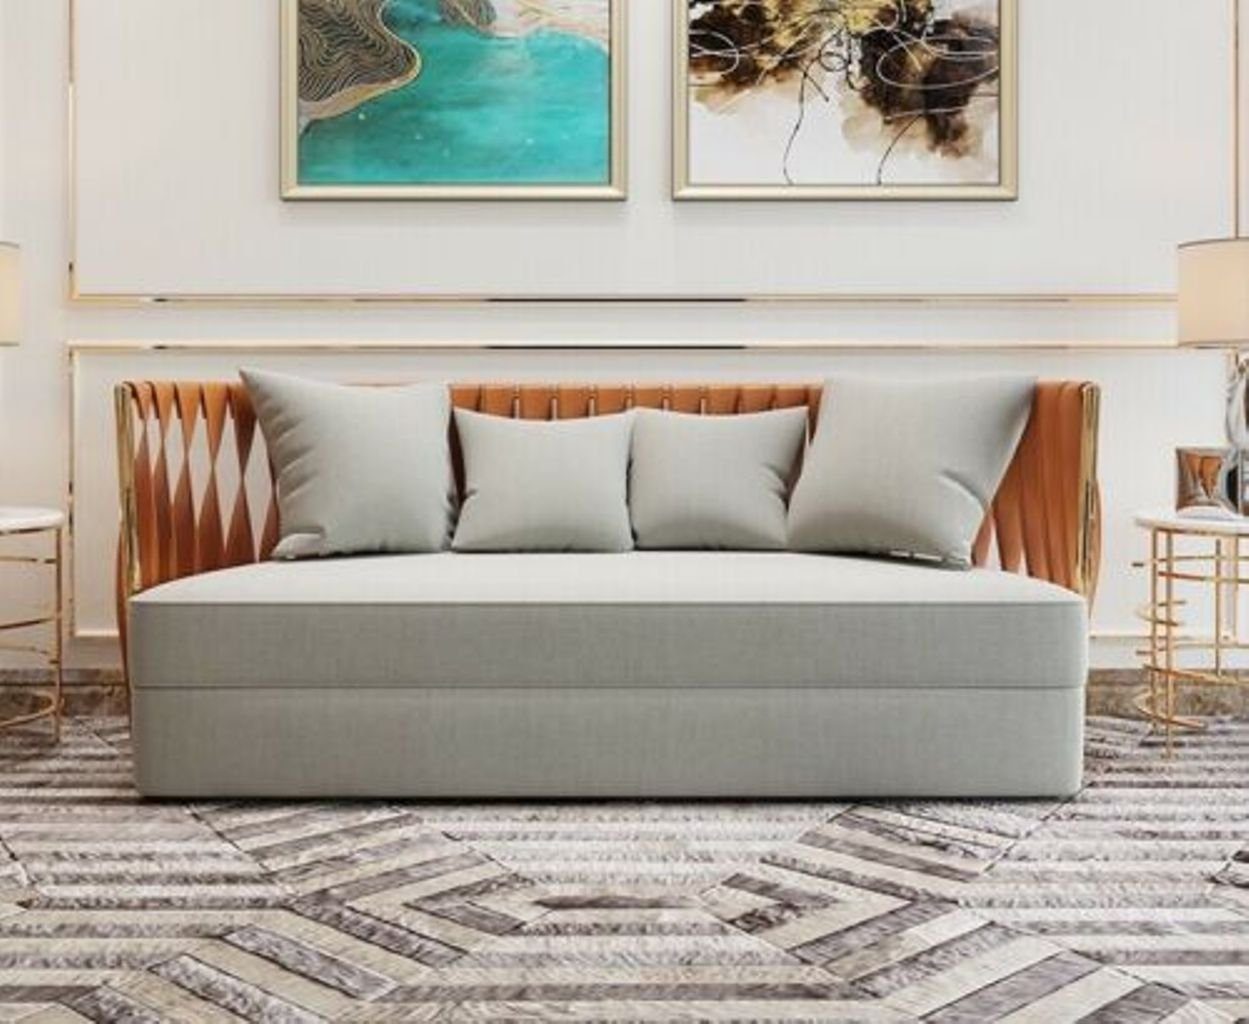 JVmoebel Wohnzimmer-Set, Garnitur Couch Polster Stoff Sofa Couchen Sitz Garnituren 3+2+1 Weiß/Orange | Wohnwände